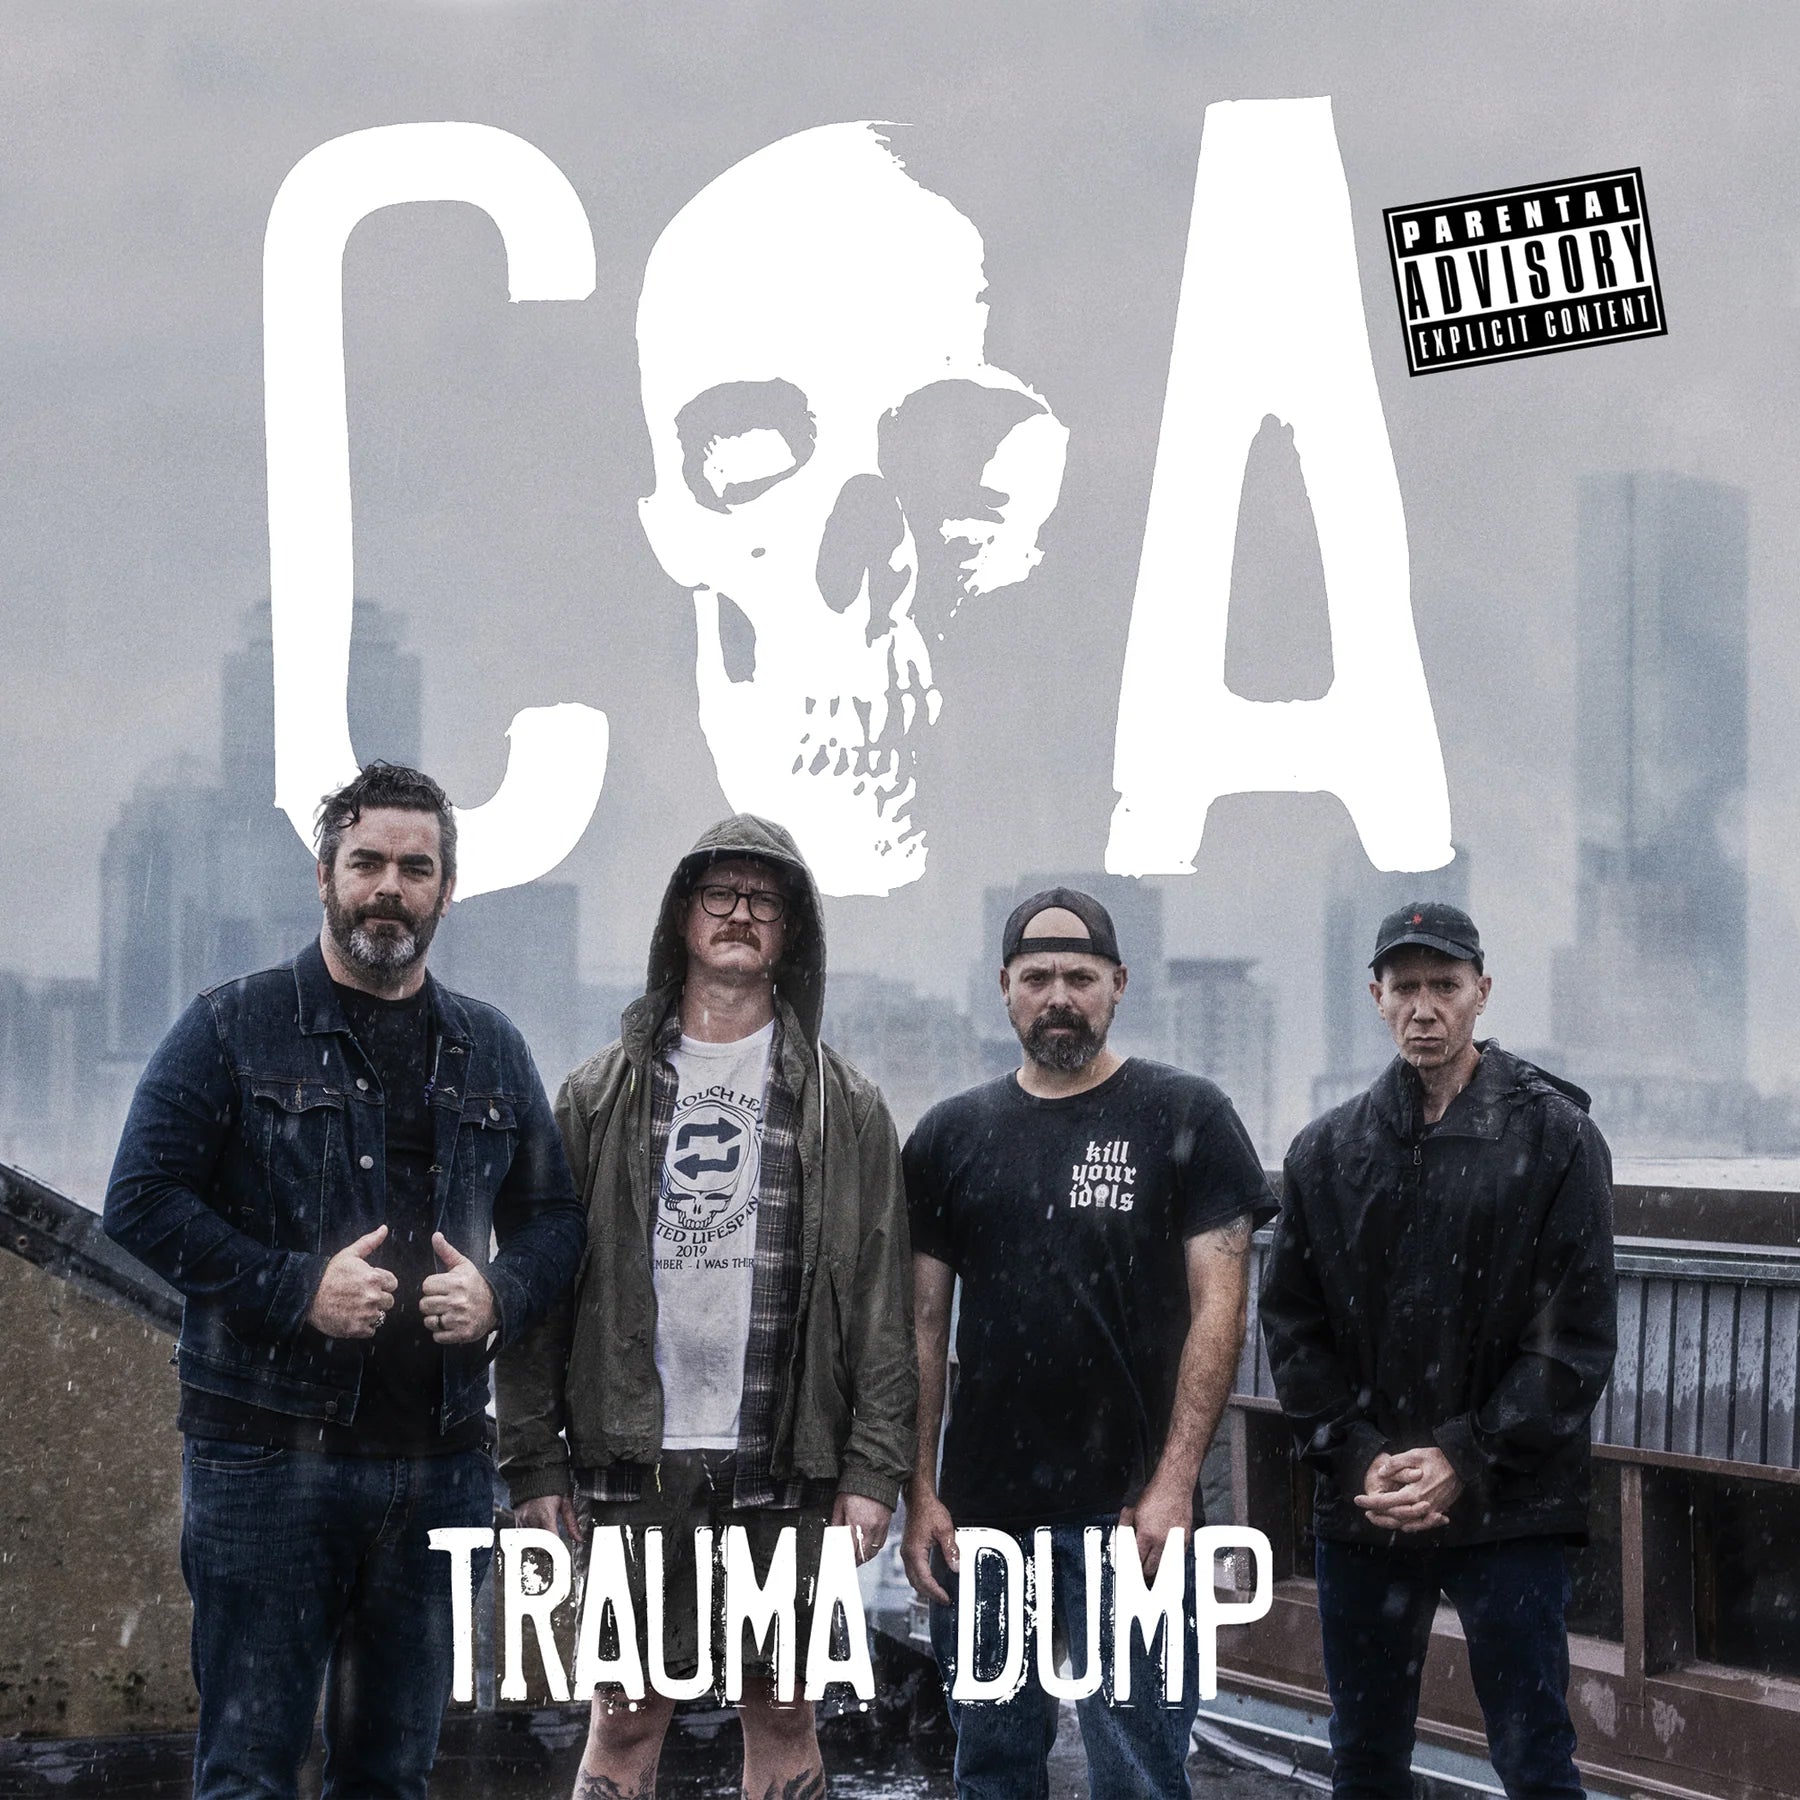 COA "Trauma Dump" 7"